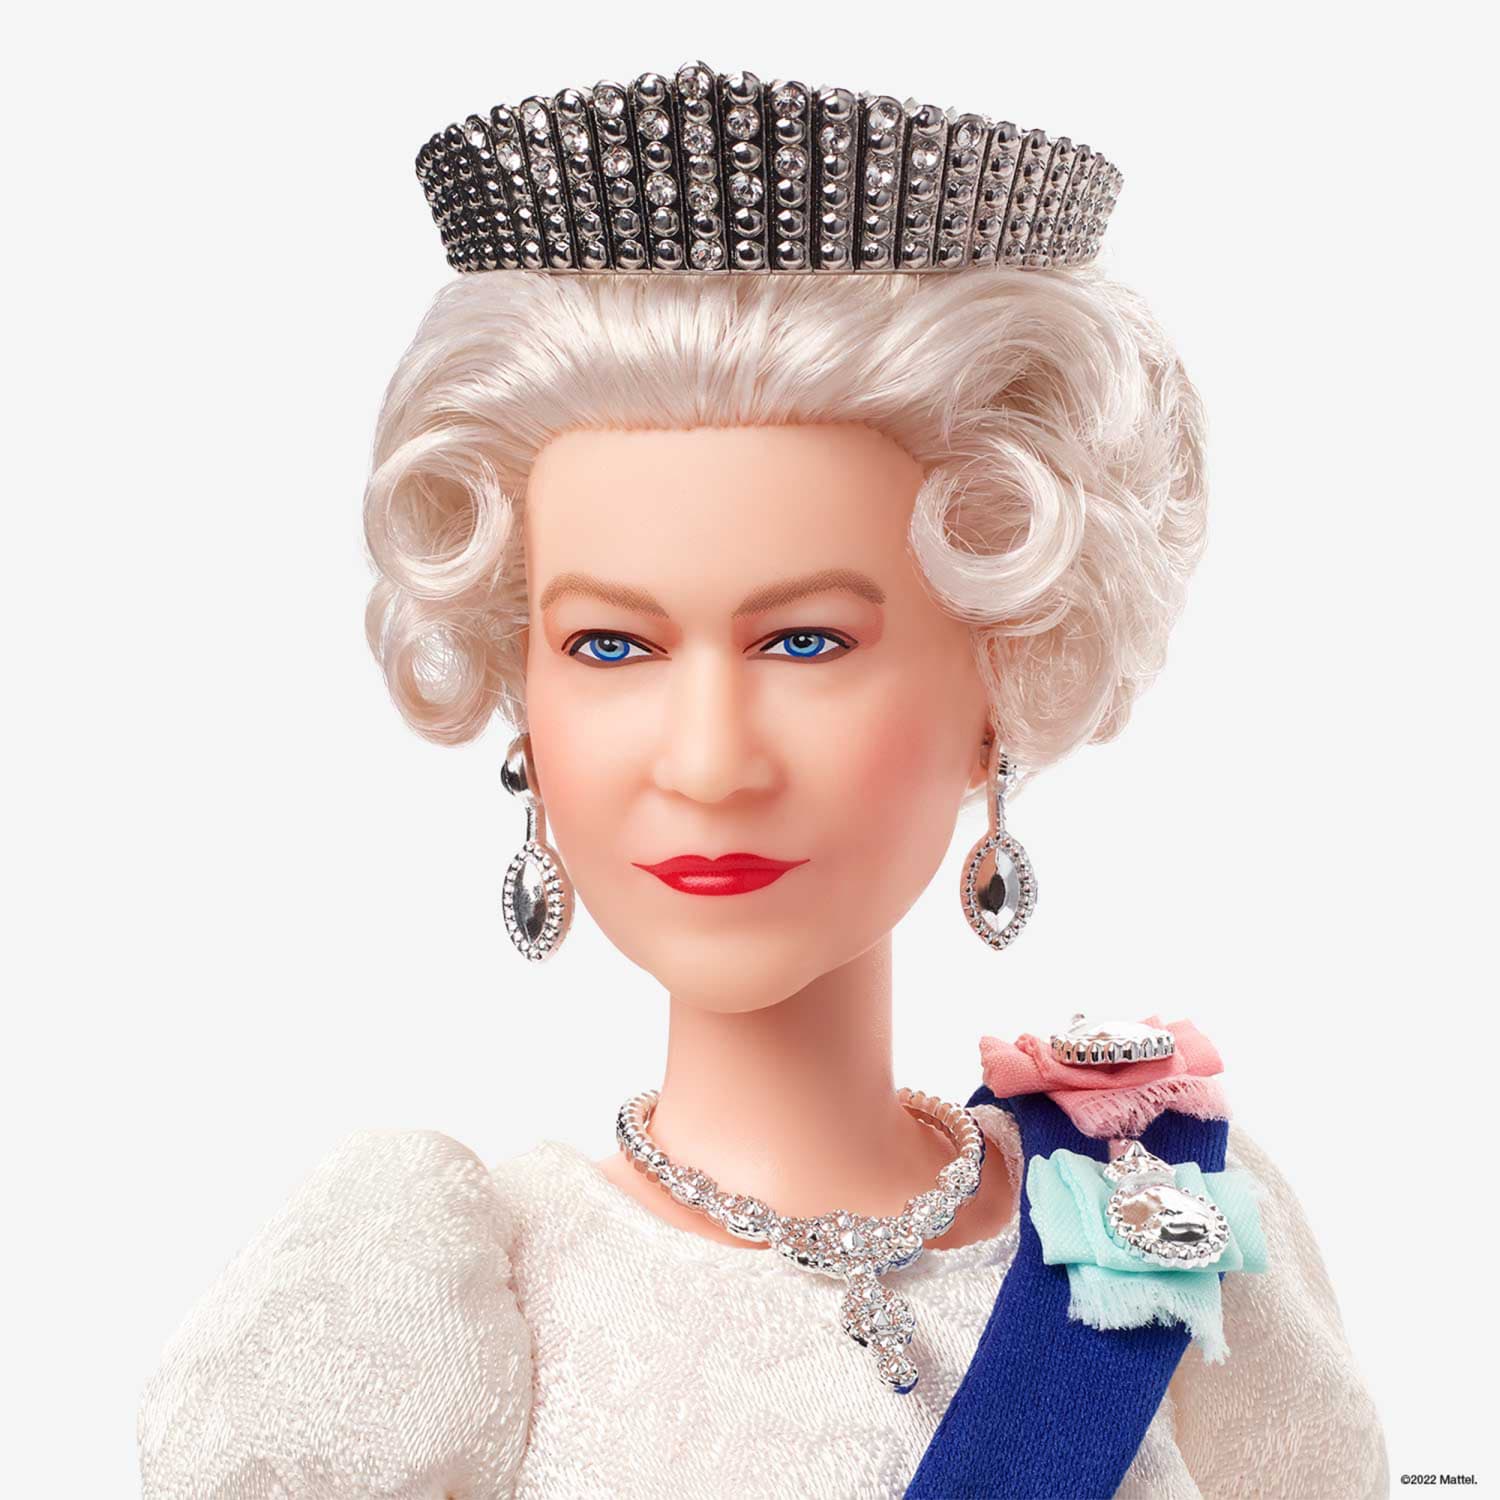 Mattel Creates Doll For Queen Elizabeth's Jubilee